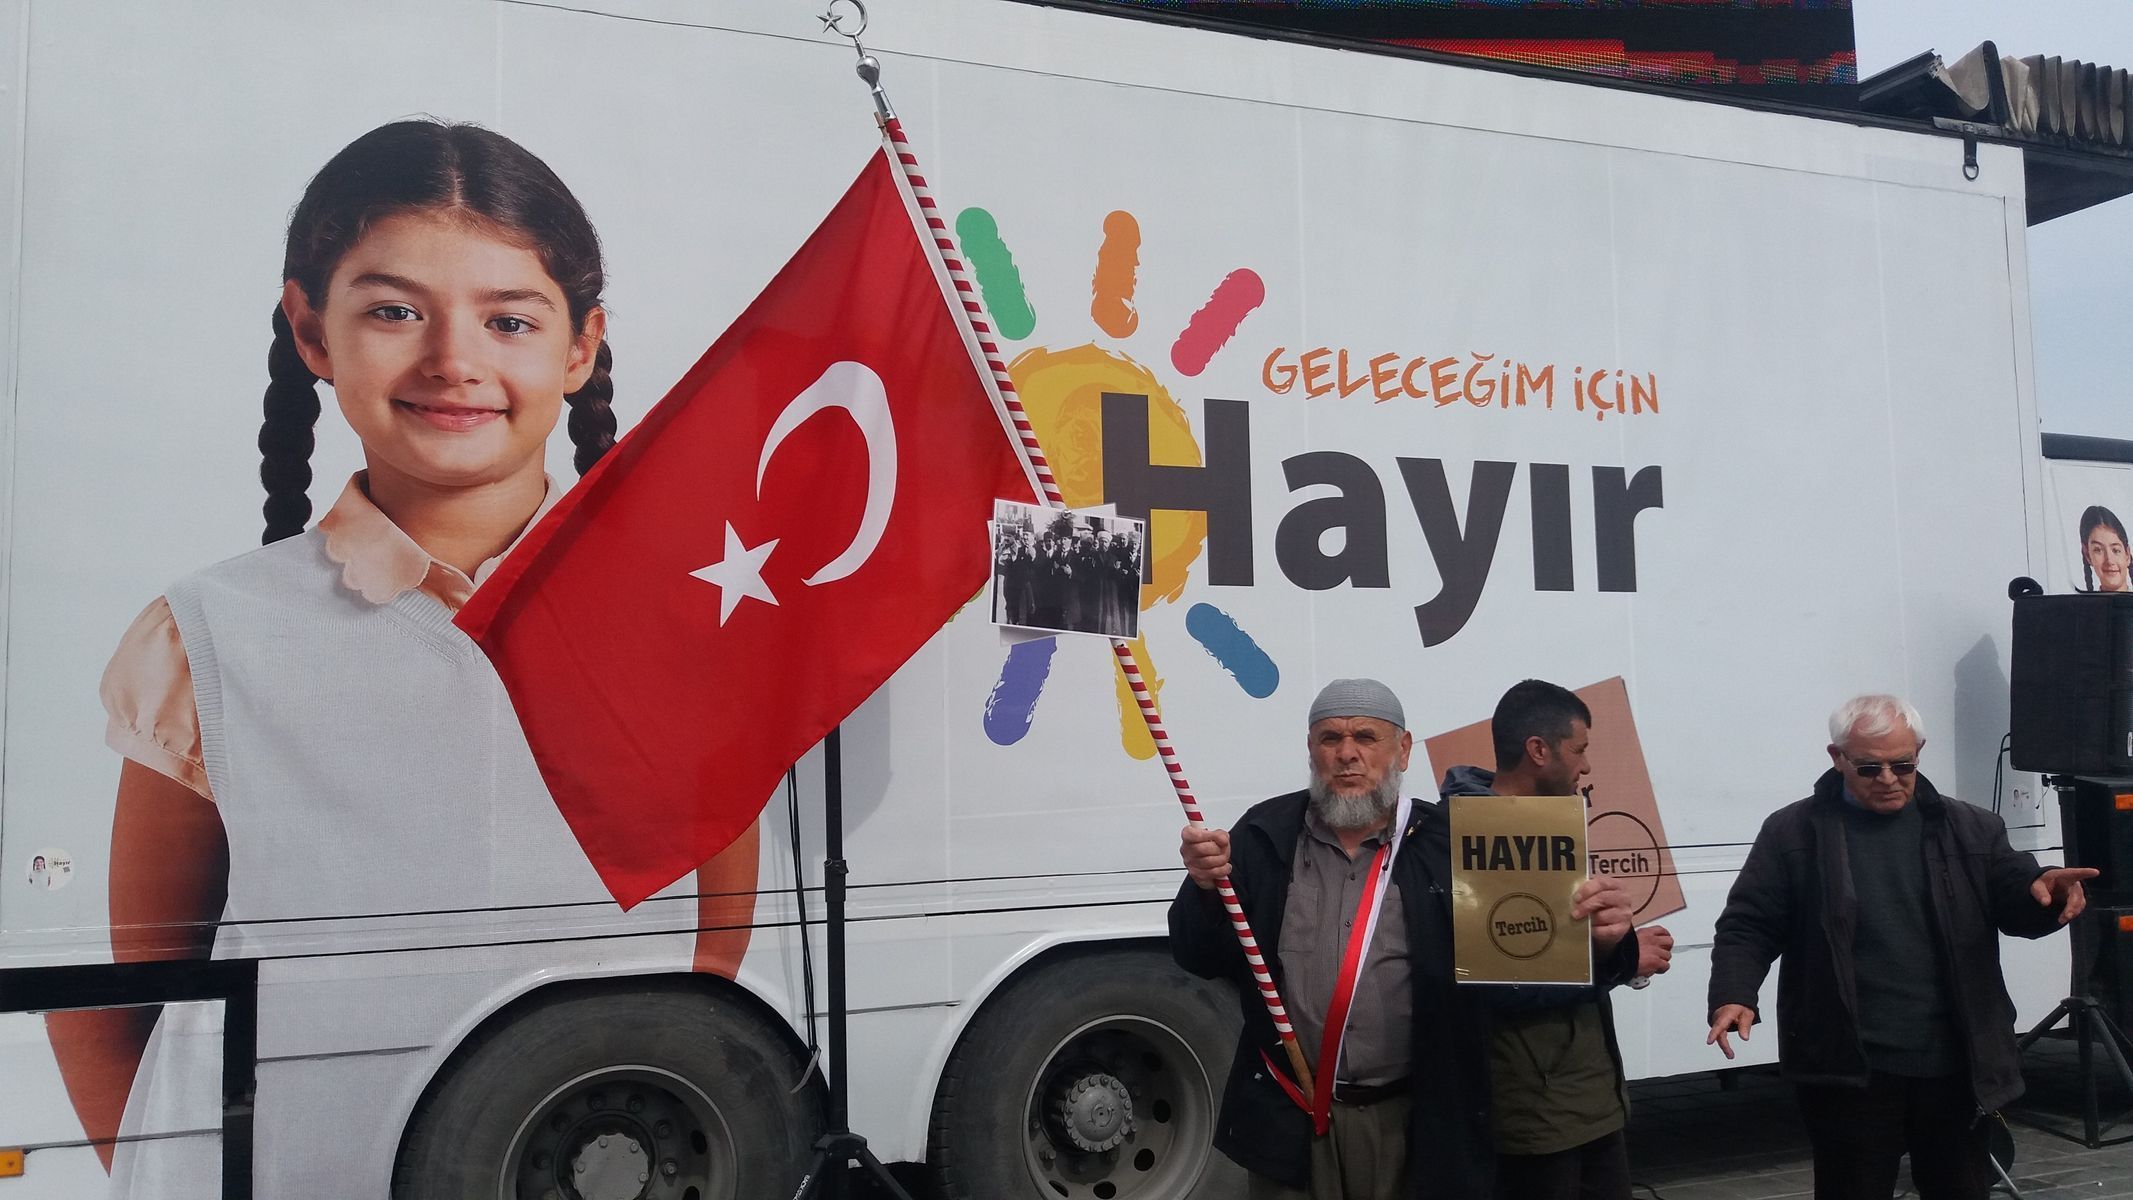 Kampaň proti změnám ústavy před referendem v Turecku.